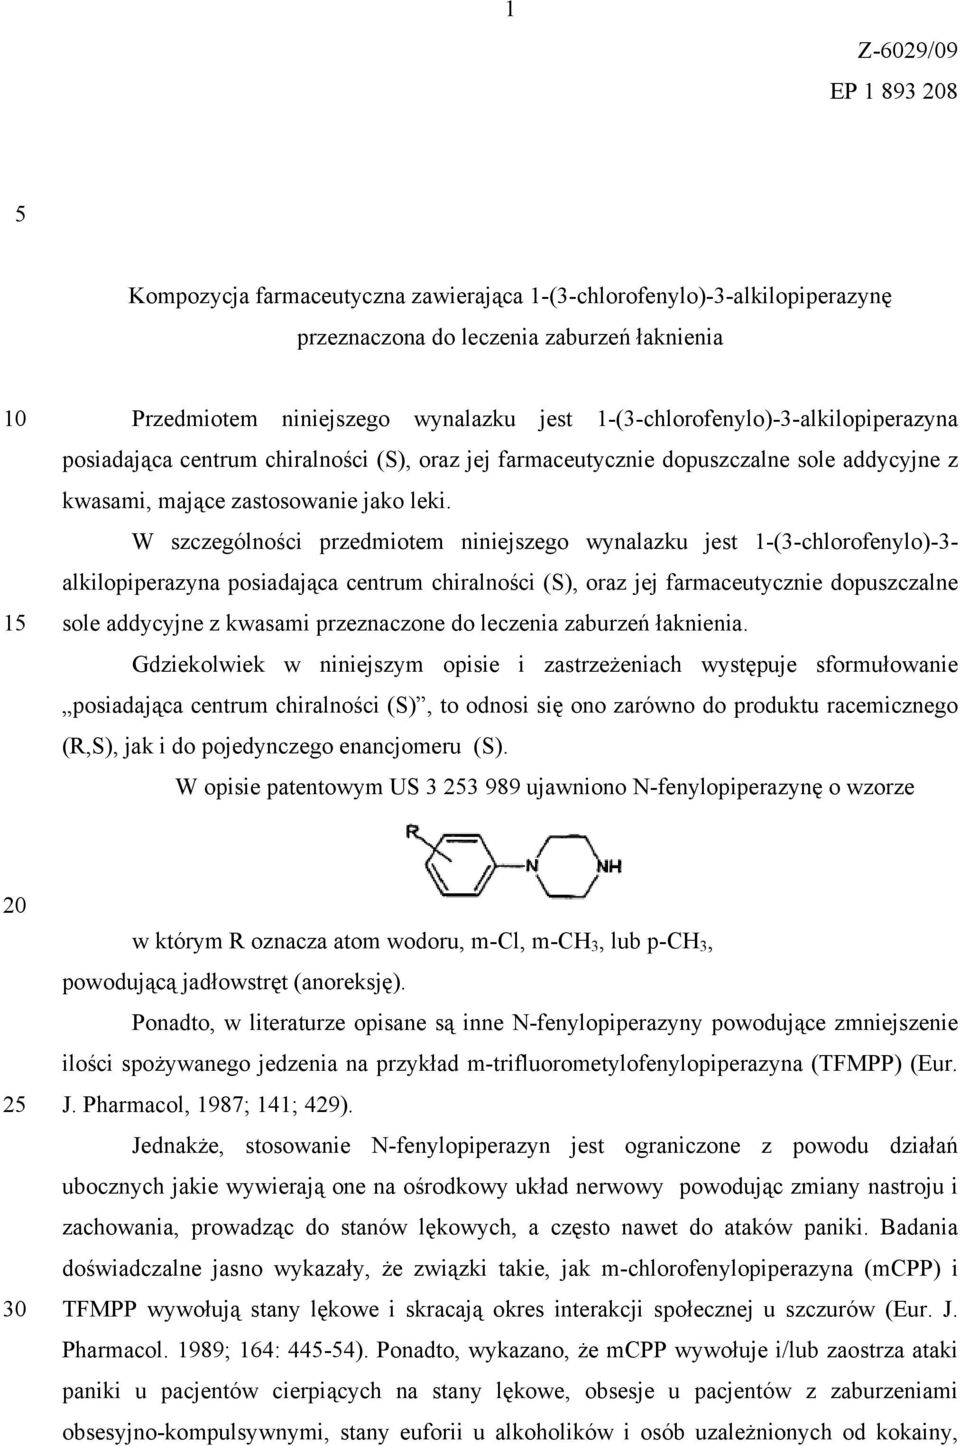 W szczególności przedmiotem niniejszego wynalazku jest 1-(3-chlorofenylo)-3- alkilopiperazyna posiadająca centrum chiralności (S), oraz jej farmaceutycznie dopuszczalne sole addycyjne z kwasami